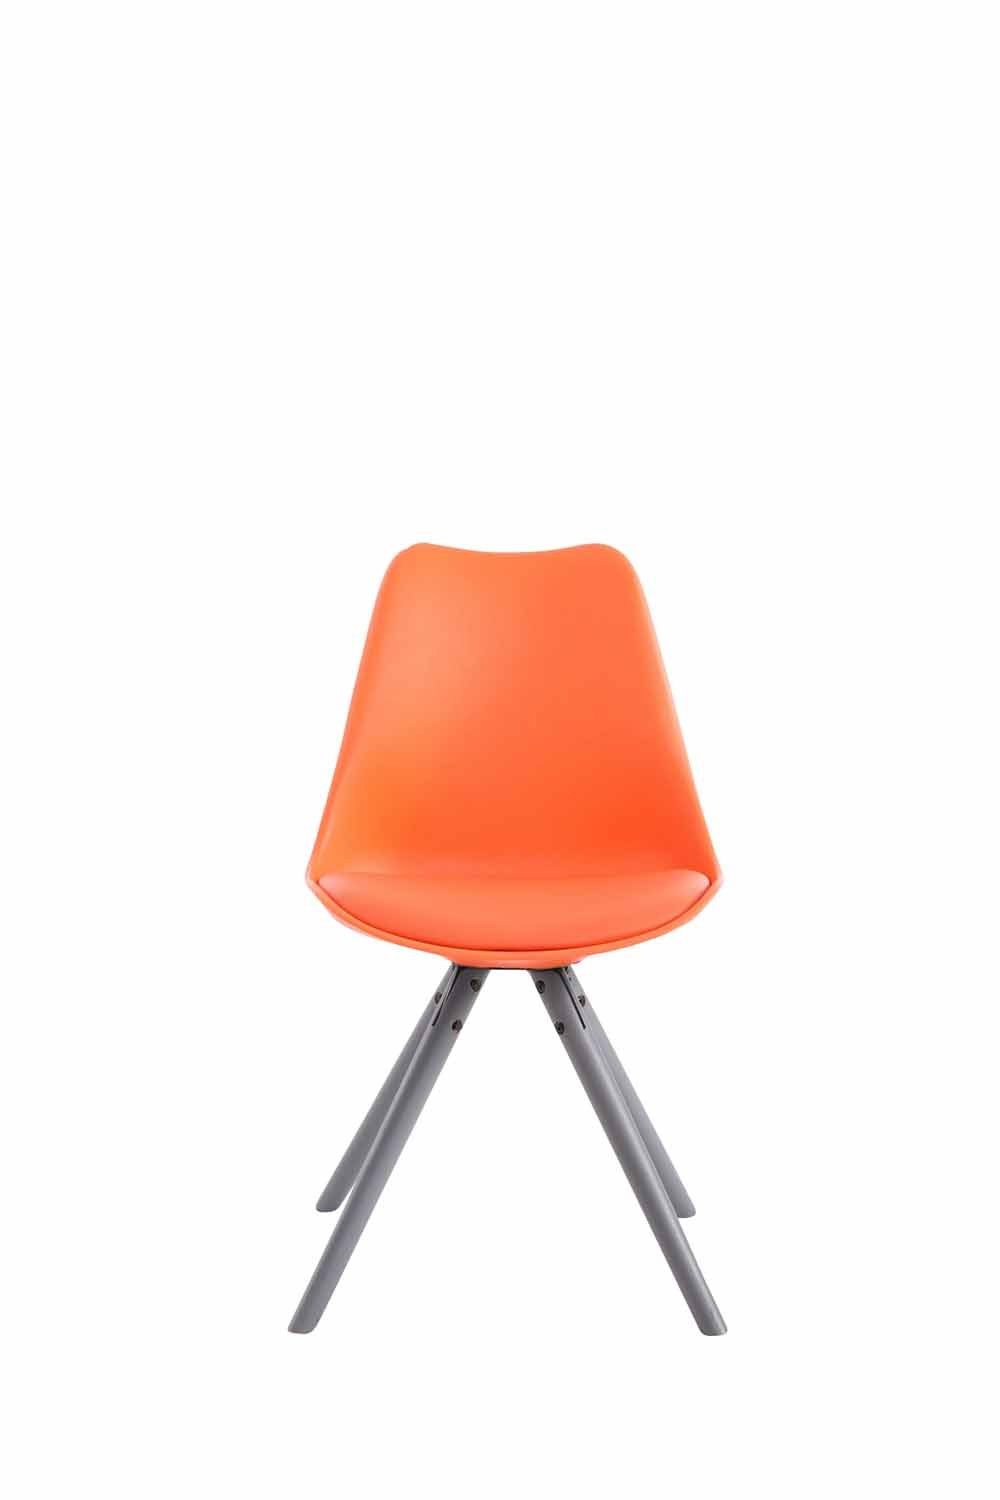 CLP Esszimmerstuhl Besucherstuhl Toulouse Kunstleder Rund grau, orange | Stühle